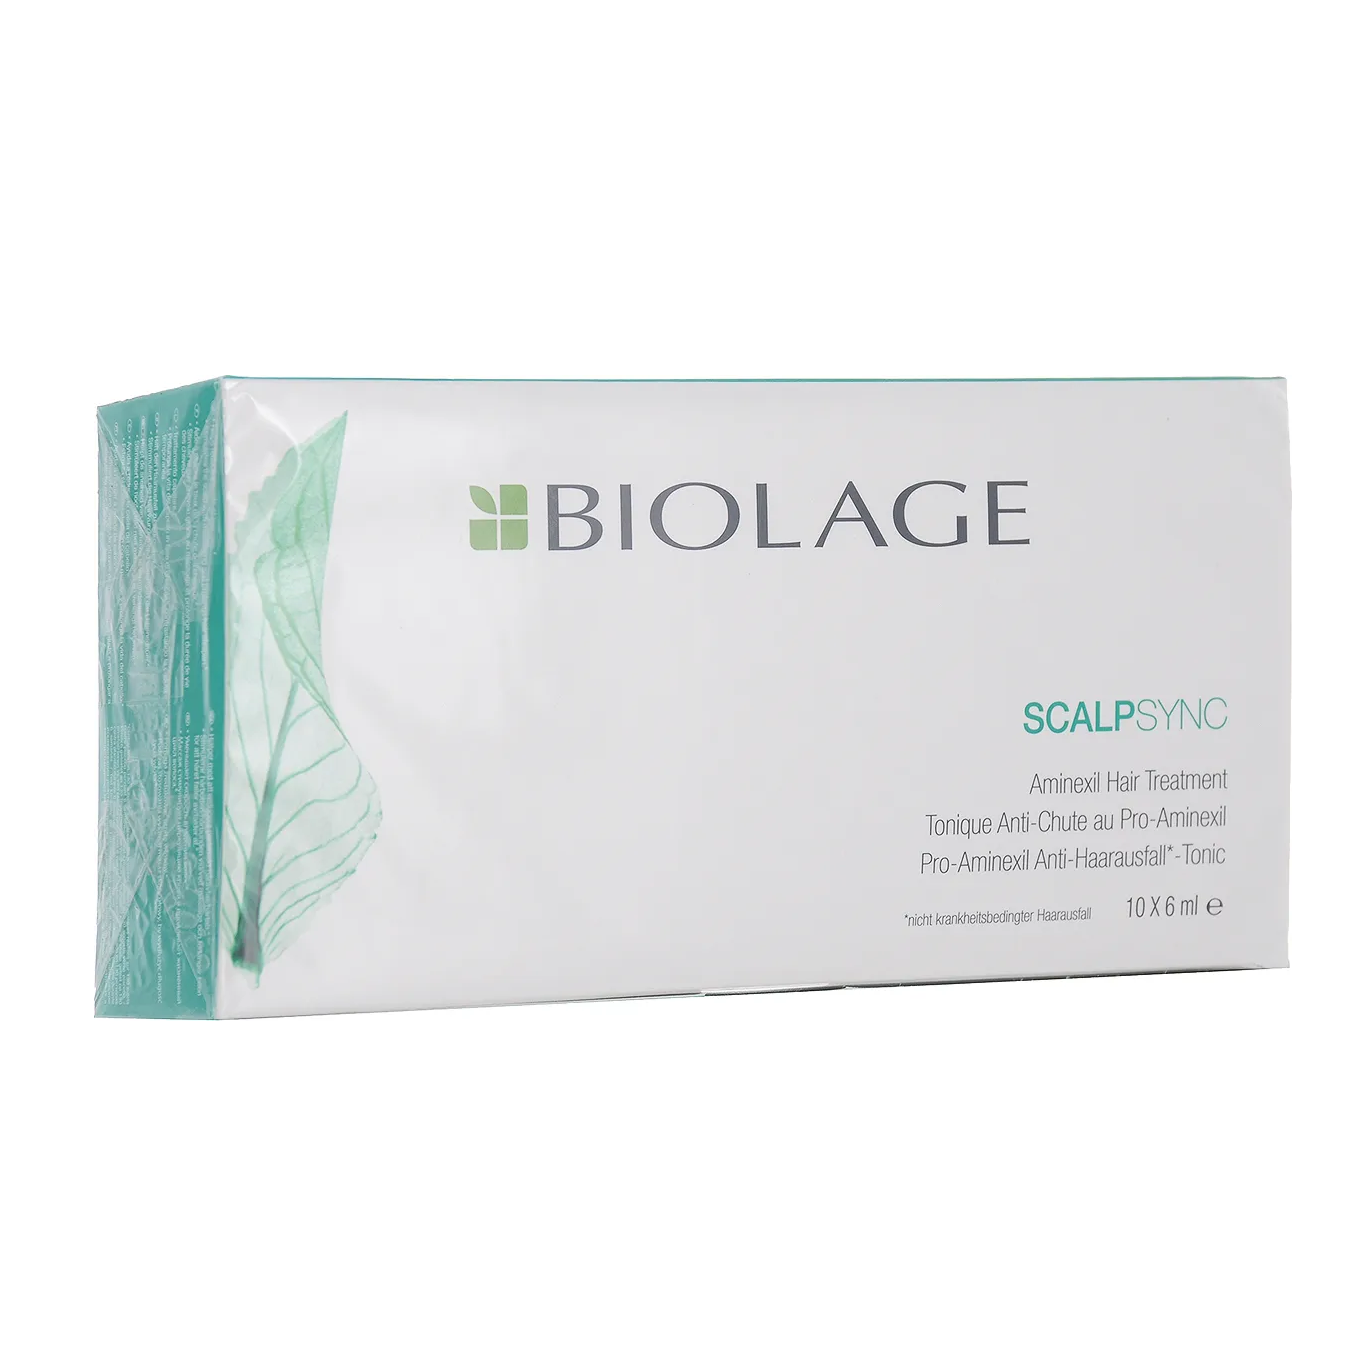 Тоник (ампулы) против выпадения волос Biolage ScalpSync Pro-Aminexil, 10 х 6 мл.